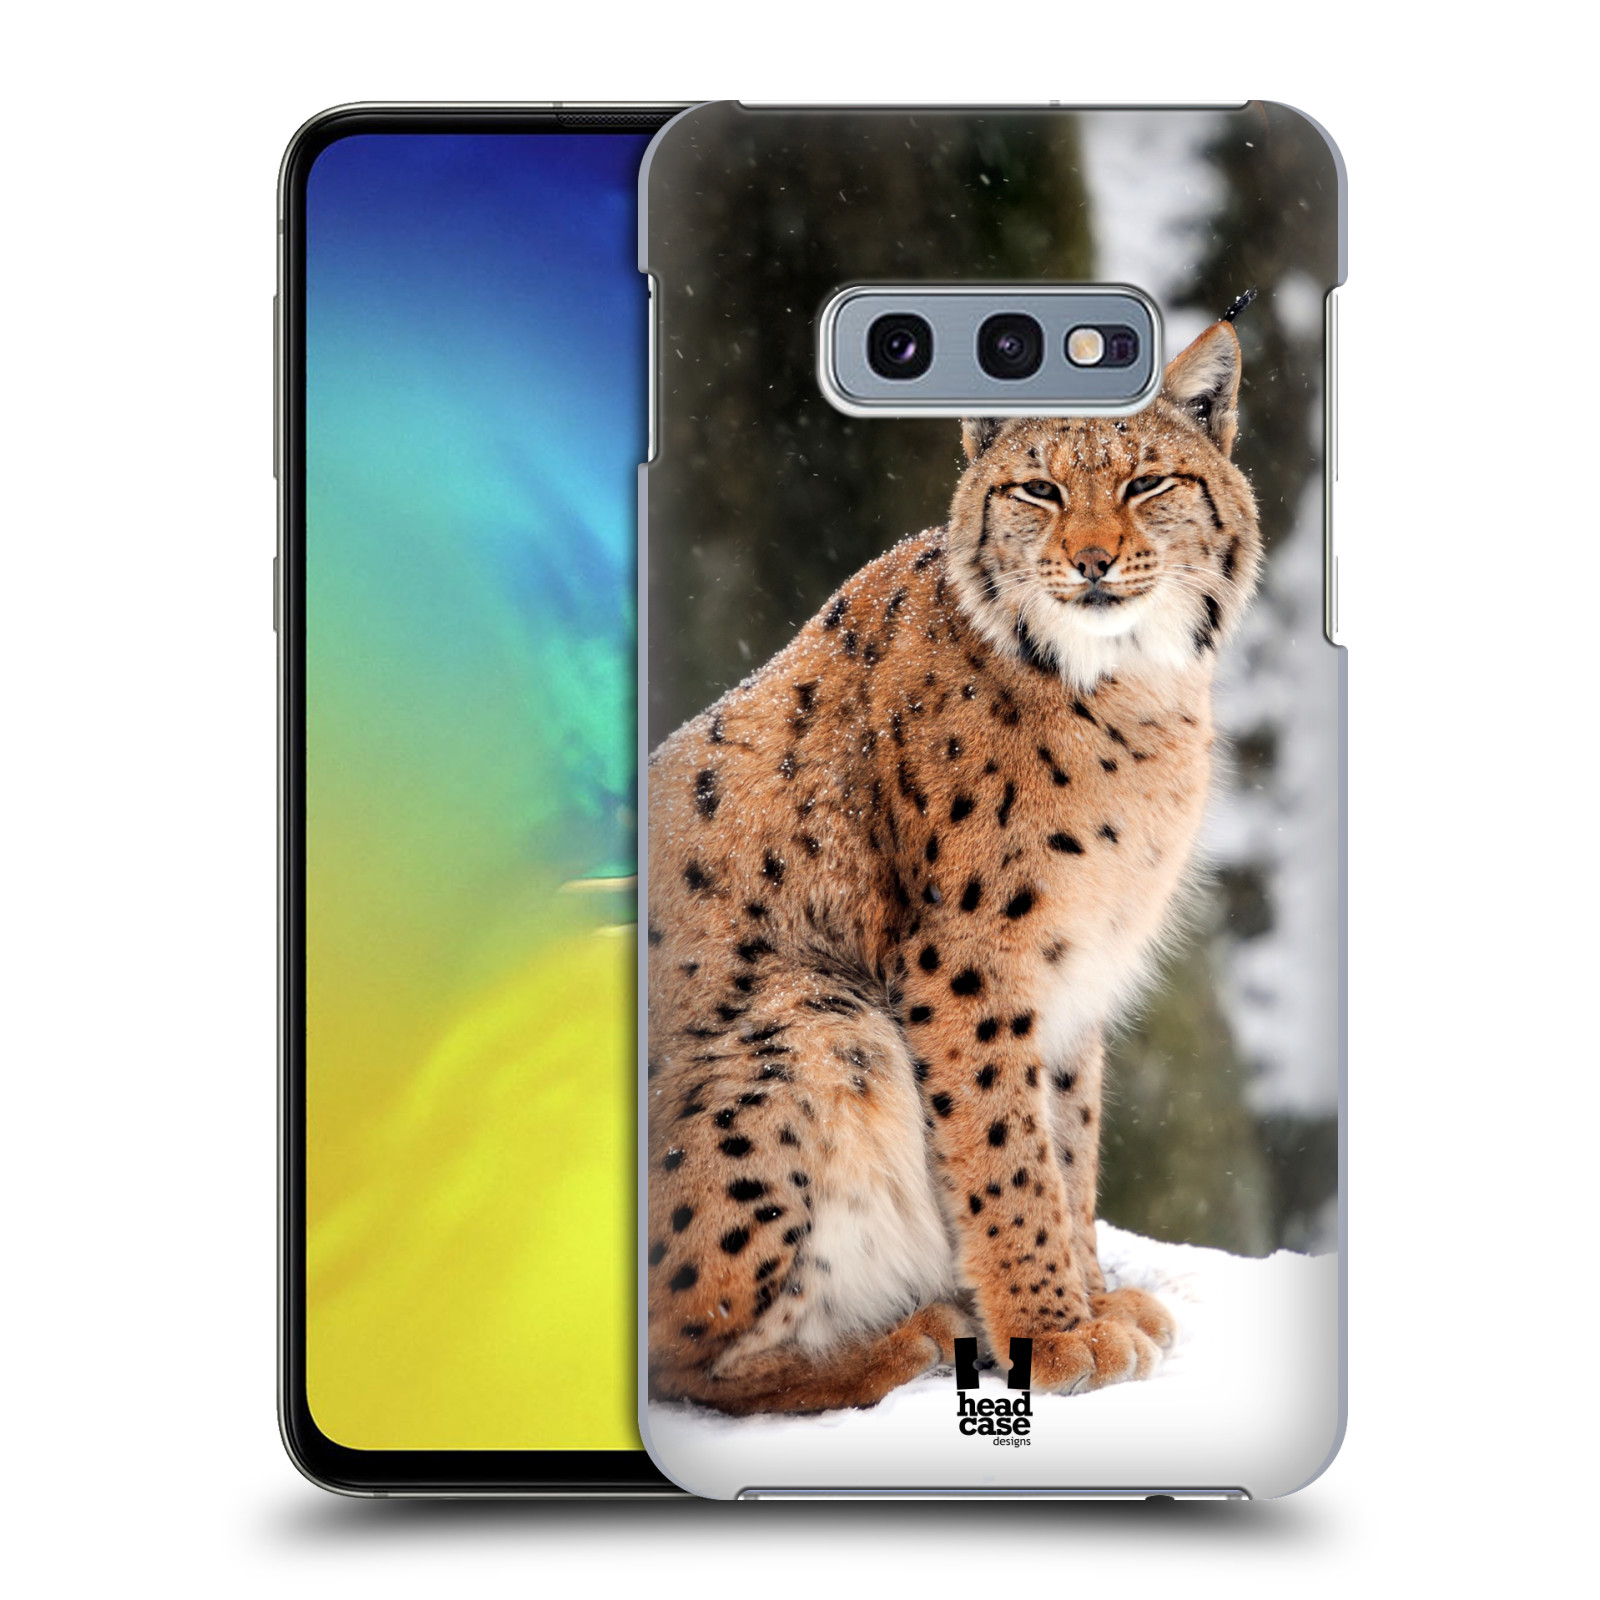 Pouzdro na mobil Samsung Galaxy S10e - HEAD CASE - vzor slavná zvířata foto rys